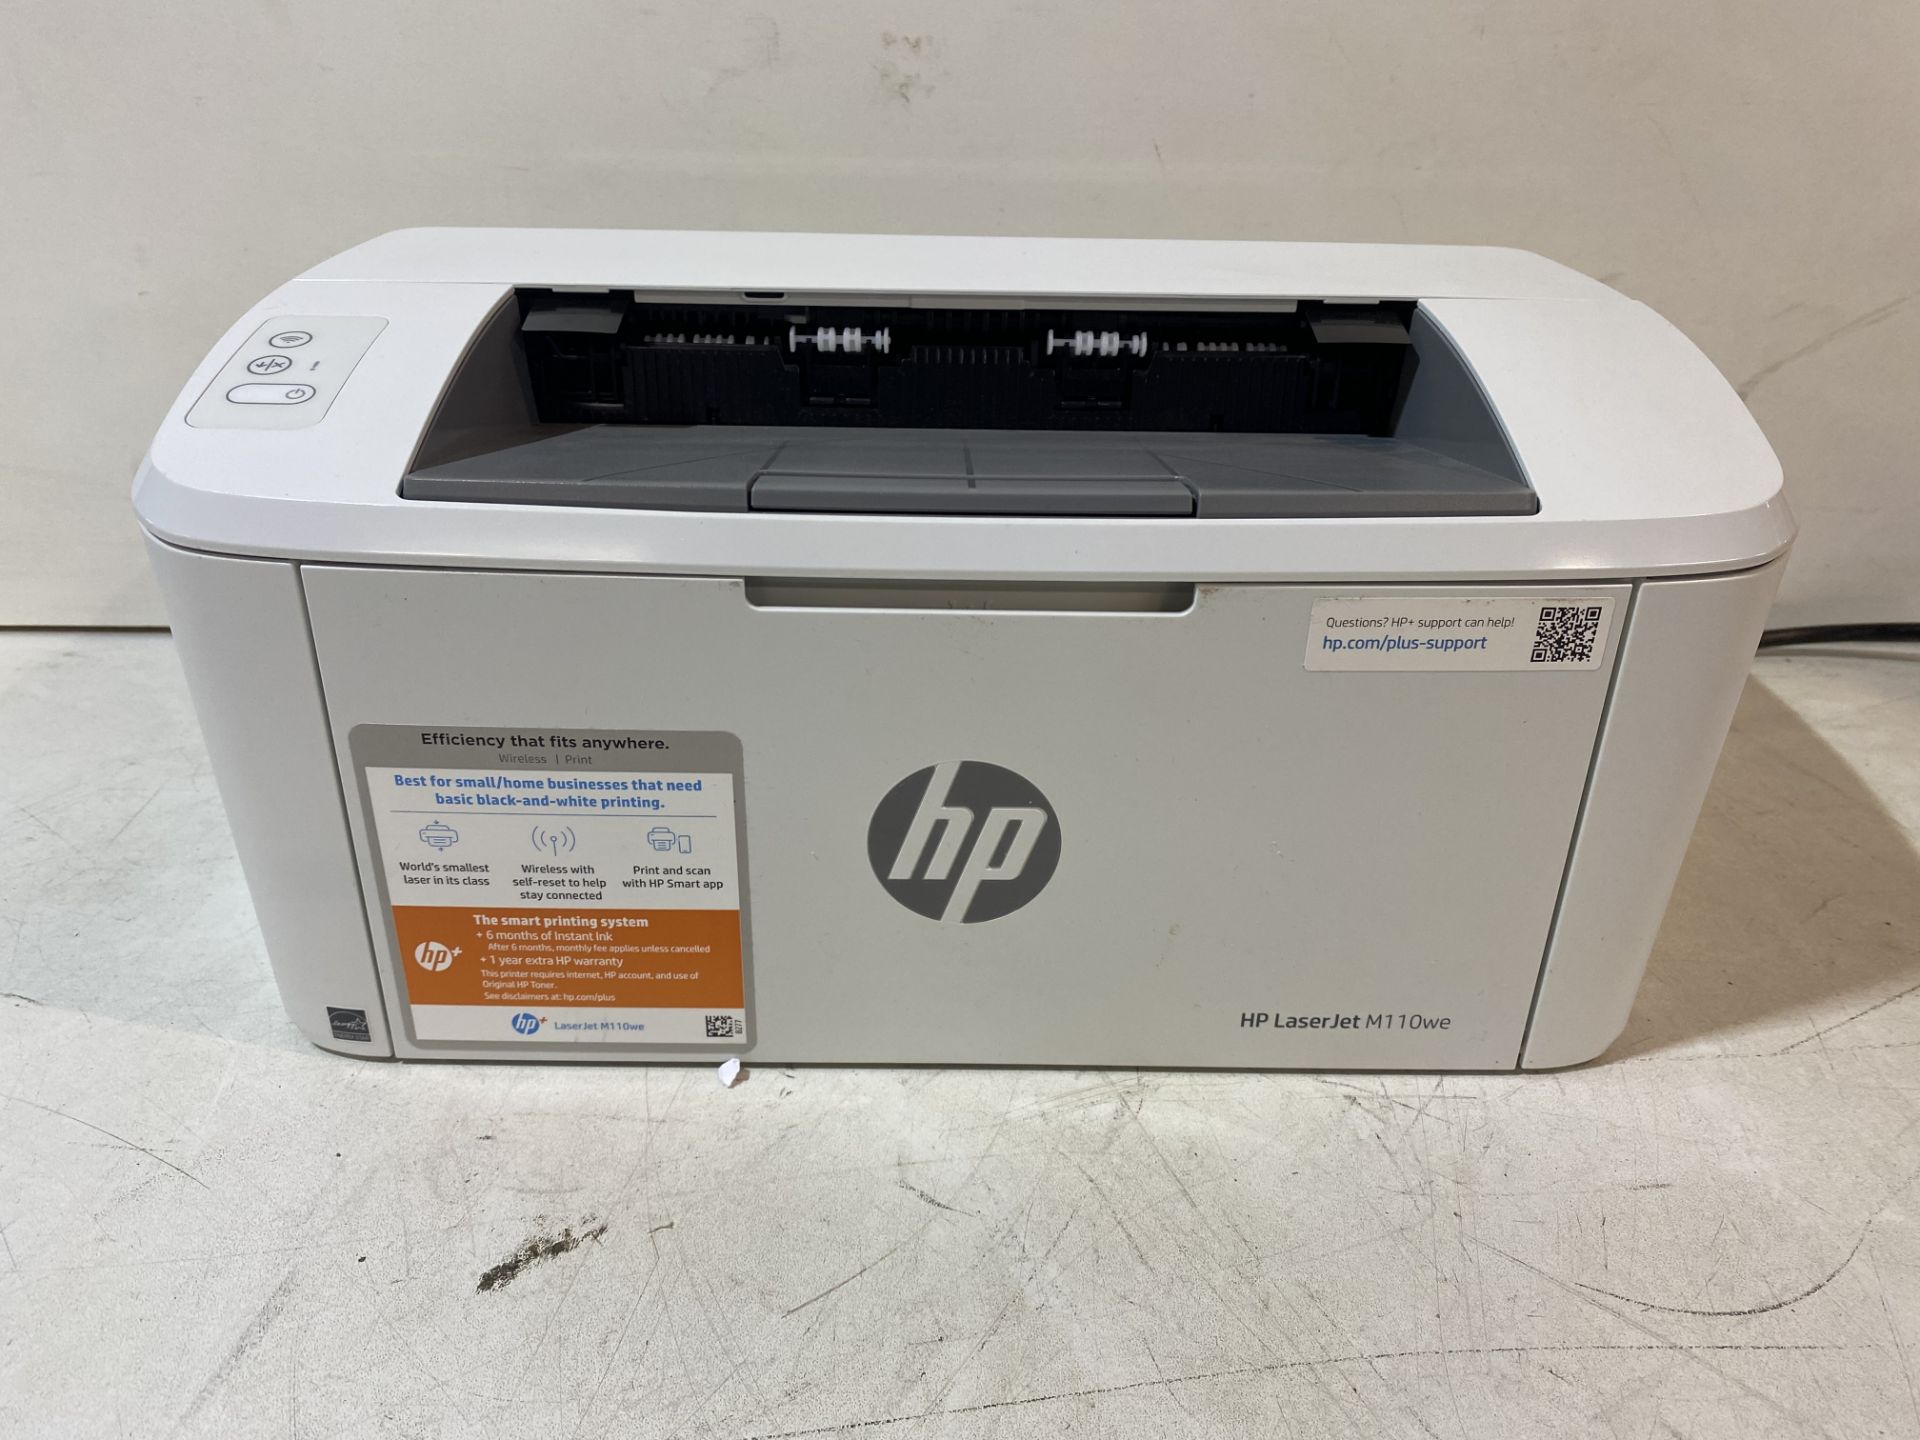 HP LaserJet M110we A4 Mono Laser Printer - Image 4 of 6